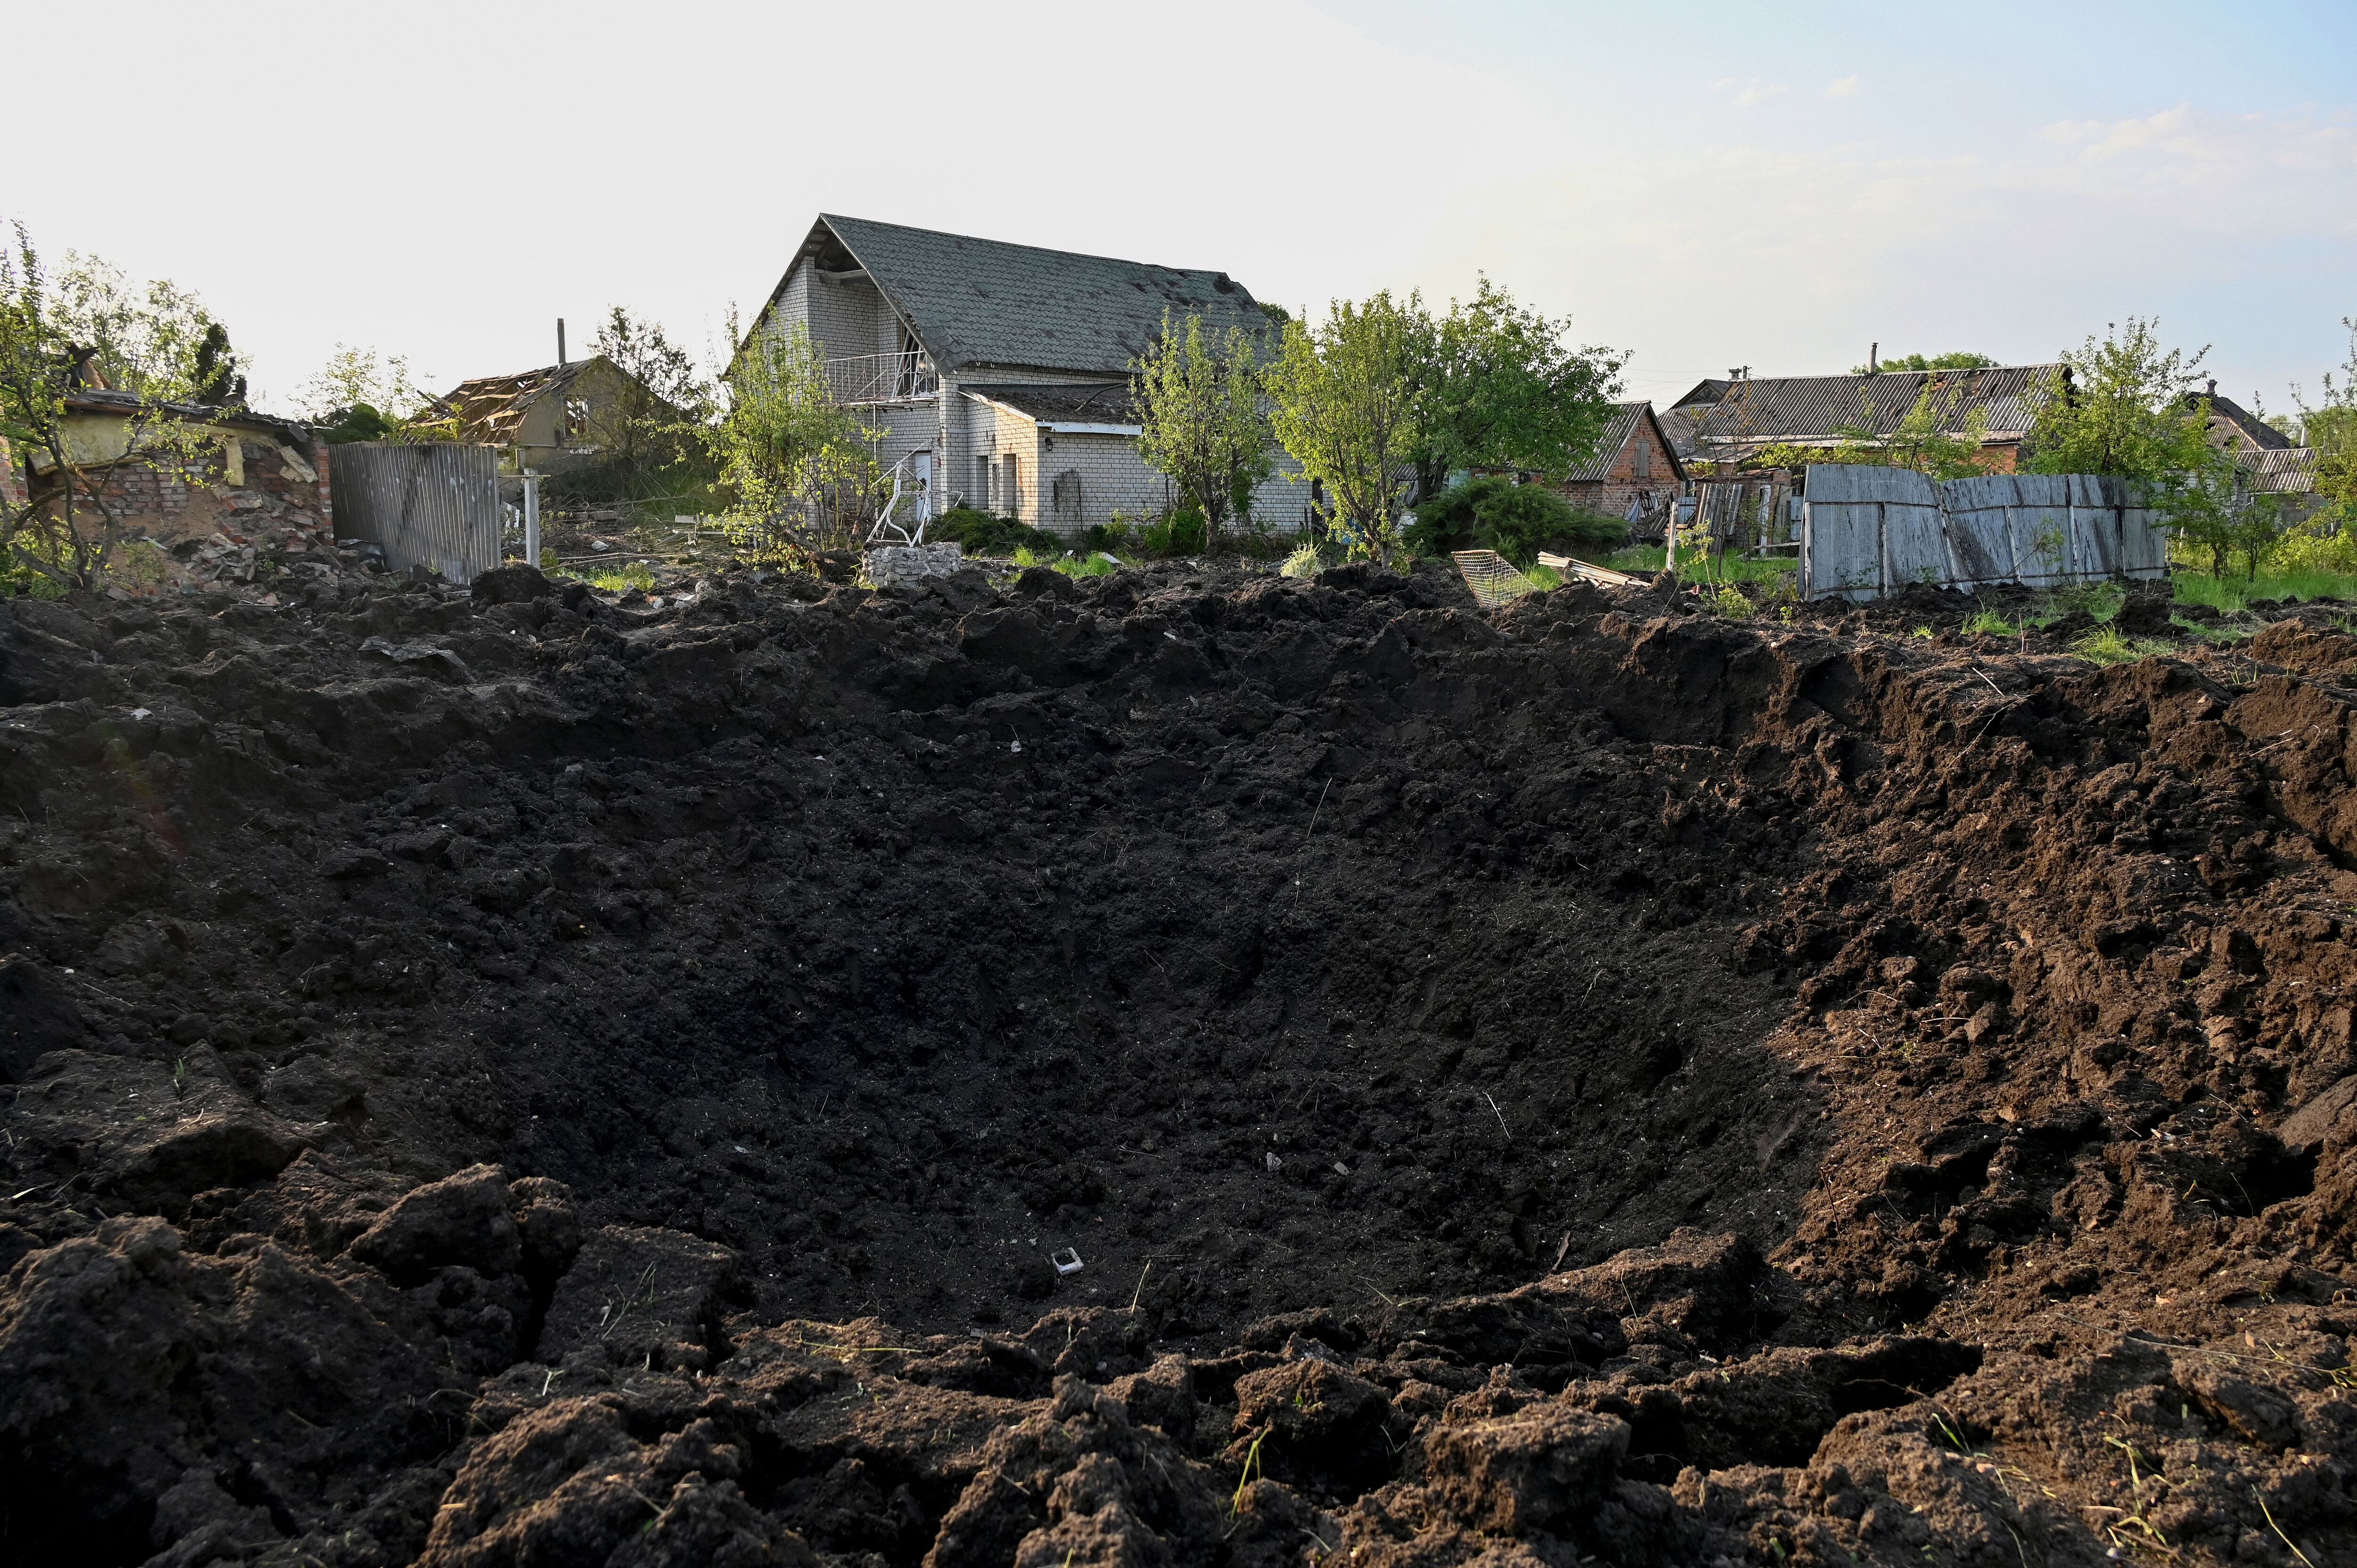 Una fotografía muestra un cráter después de un ataque con misiles en la aldea de Tsirkuny, región de Kharkiv. Como resultado del bombardeo, dos mangueras privadas quedaron completamente destruidas. Un residente local de 52 años murió y dos residentes locales más resultaron heridos.